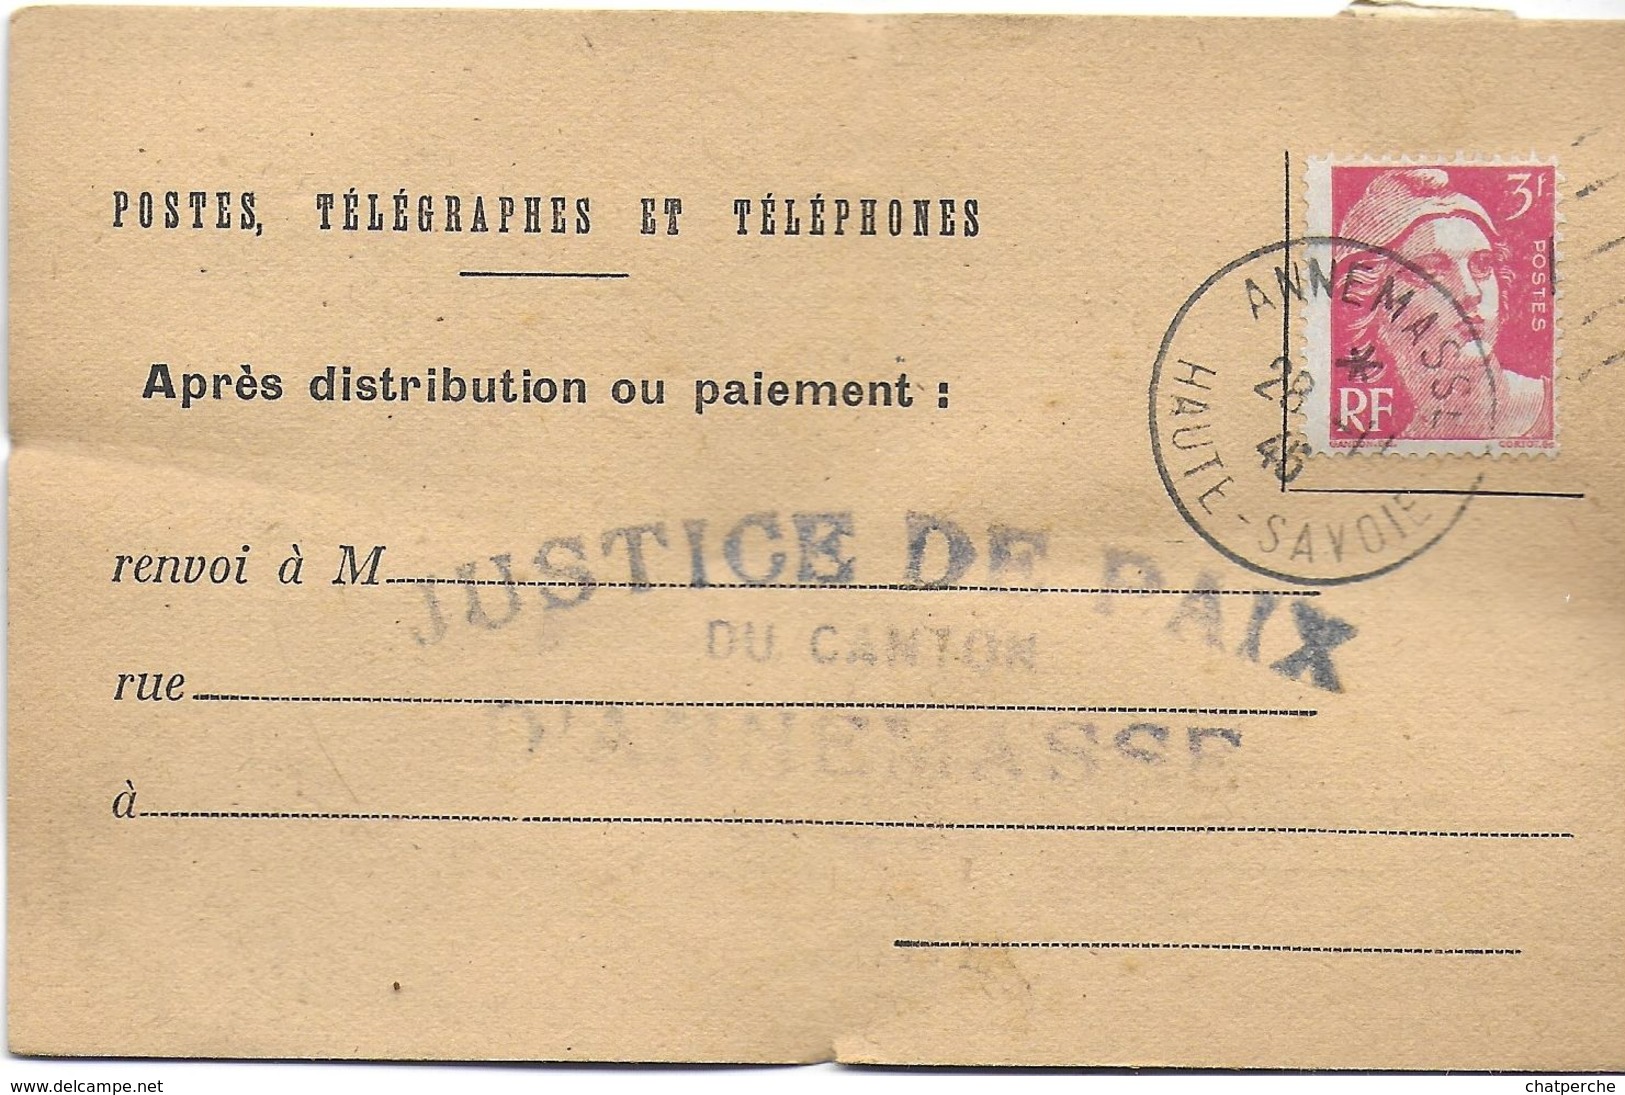 AVIS RÉCEPTION OU PAIEMENT POSTES TÉLÉGRAPHE & TÉLÉPHONES  1946  ANNEMASSE 74 HAUTE SAVOIE  JUSTICE DE PAIX CANTON LOT 3 - Documenti Storici